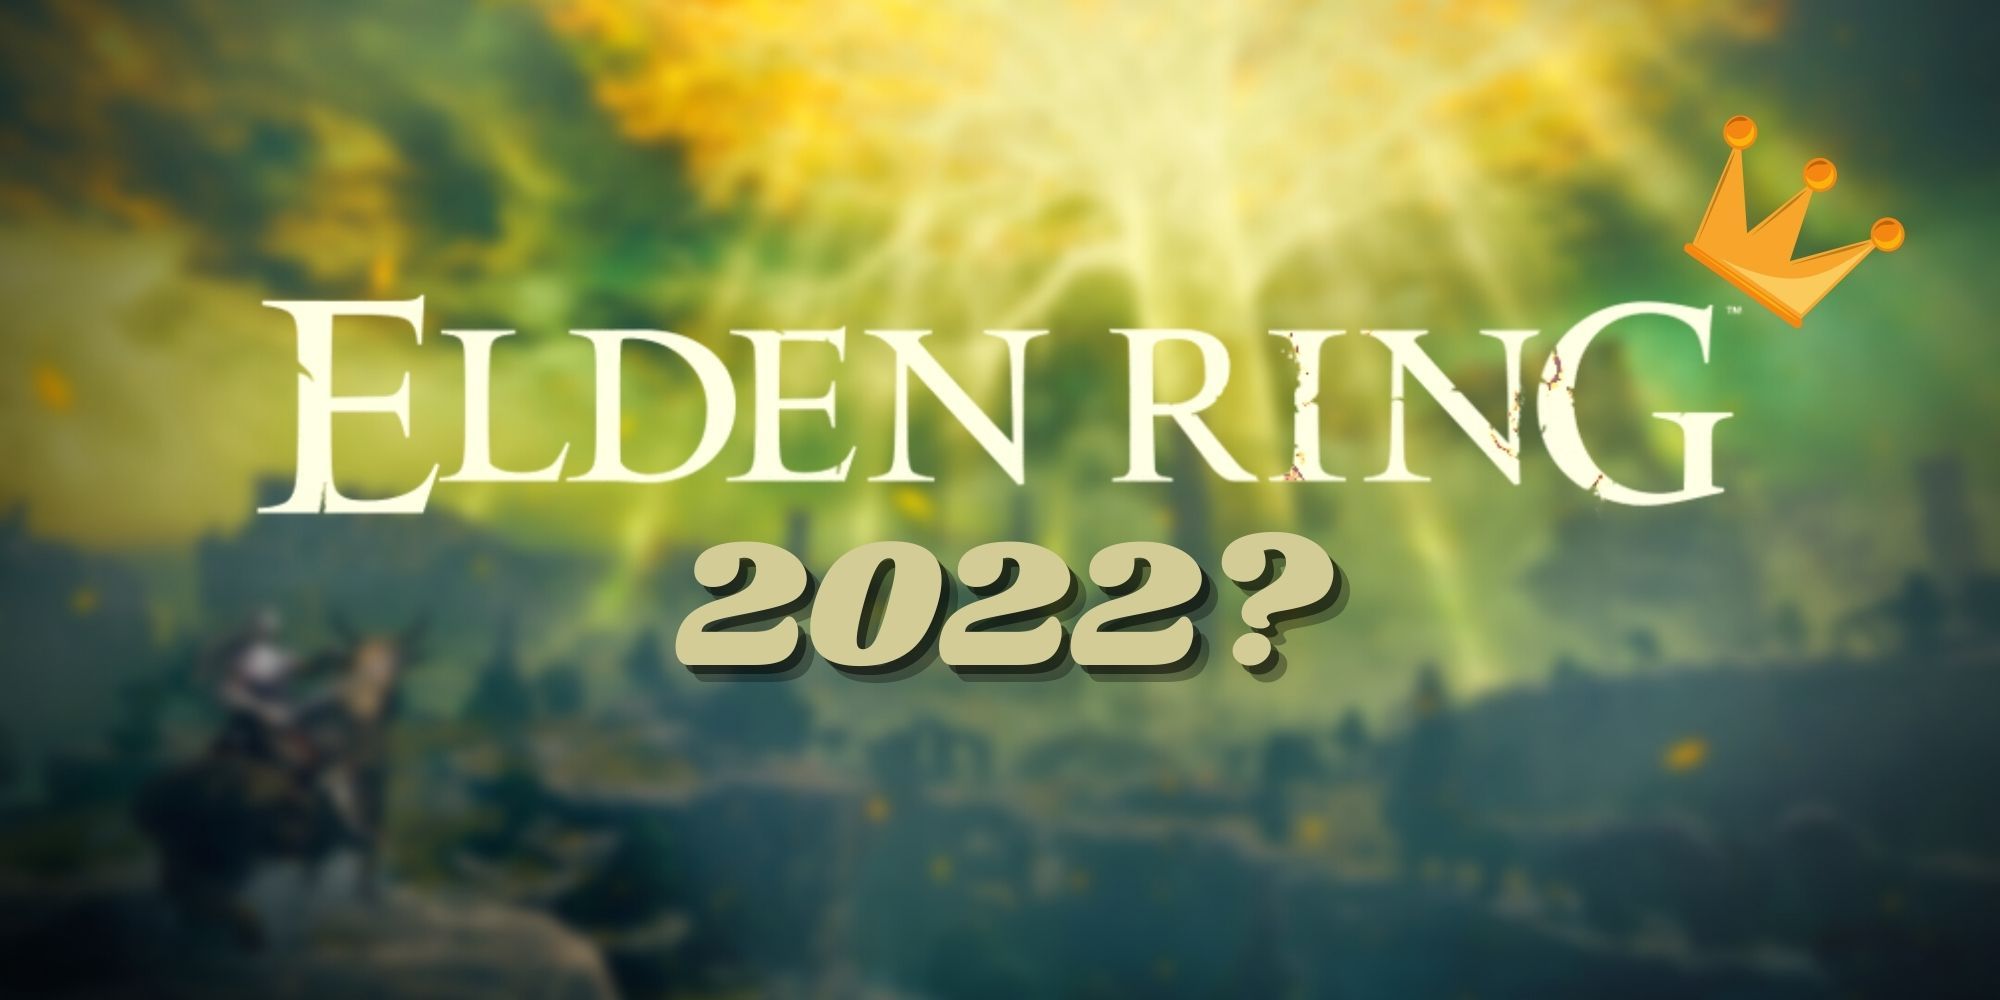 Por qué Elden Ring puede ganar el premio al juego más esperado por 3 años seguidos